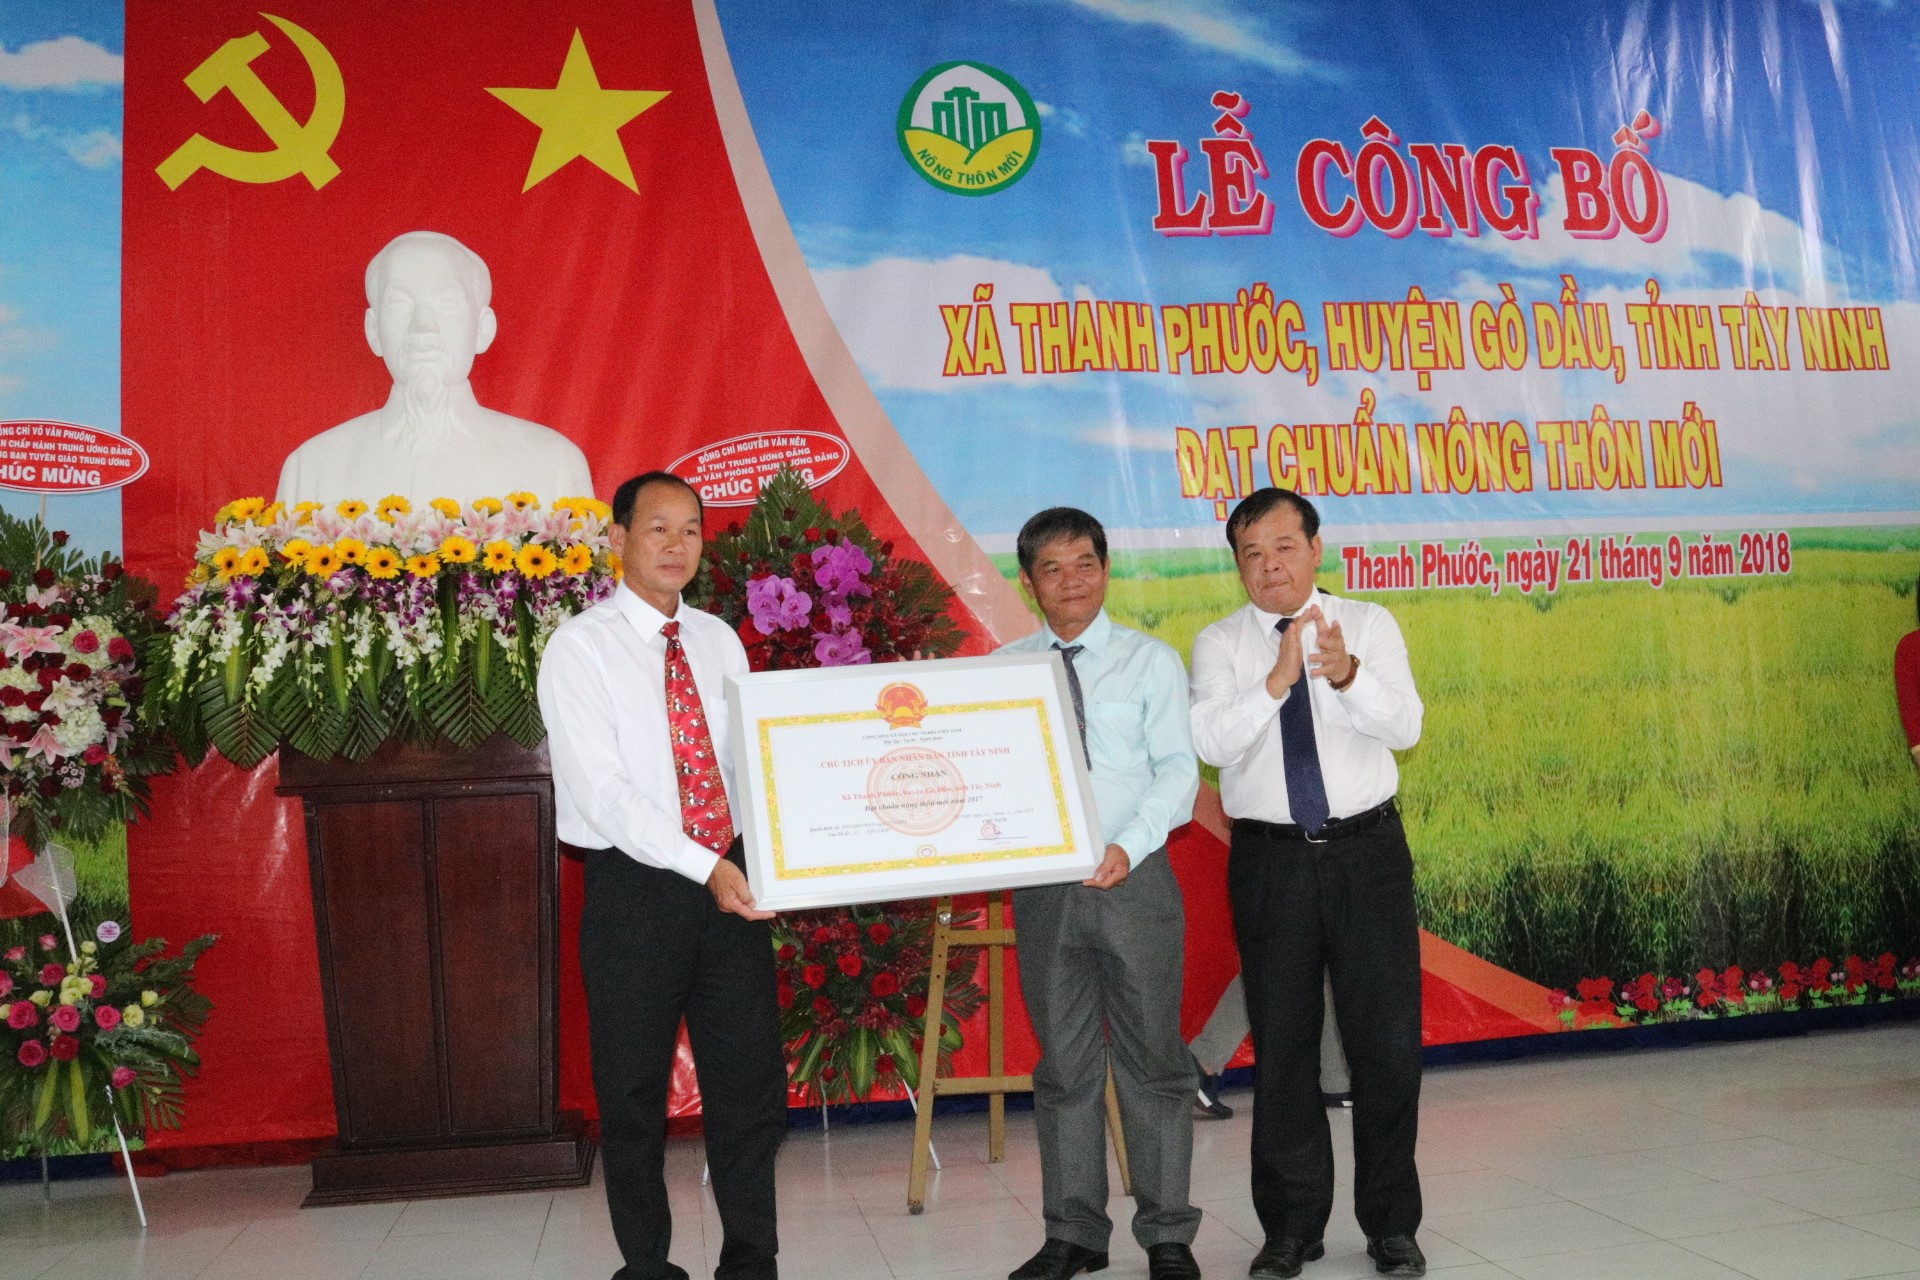 Gò Dầu tổ chức lễ công bố xã Thanh Phước đạt chuẩn nông thôn mới